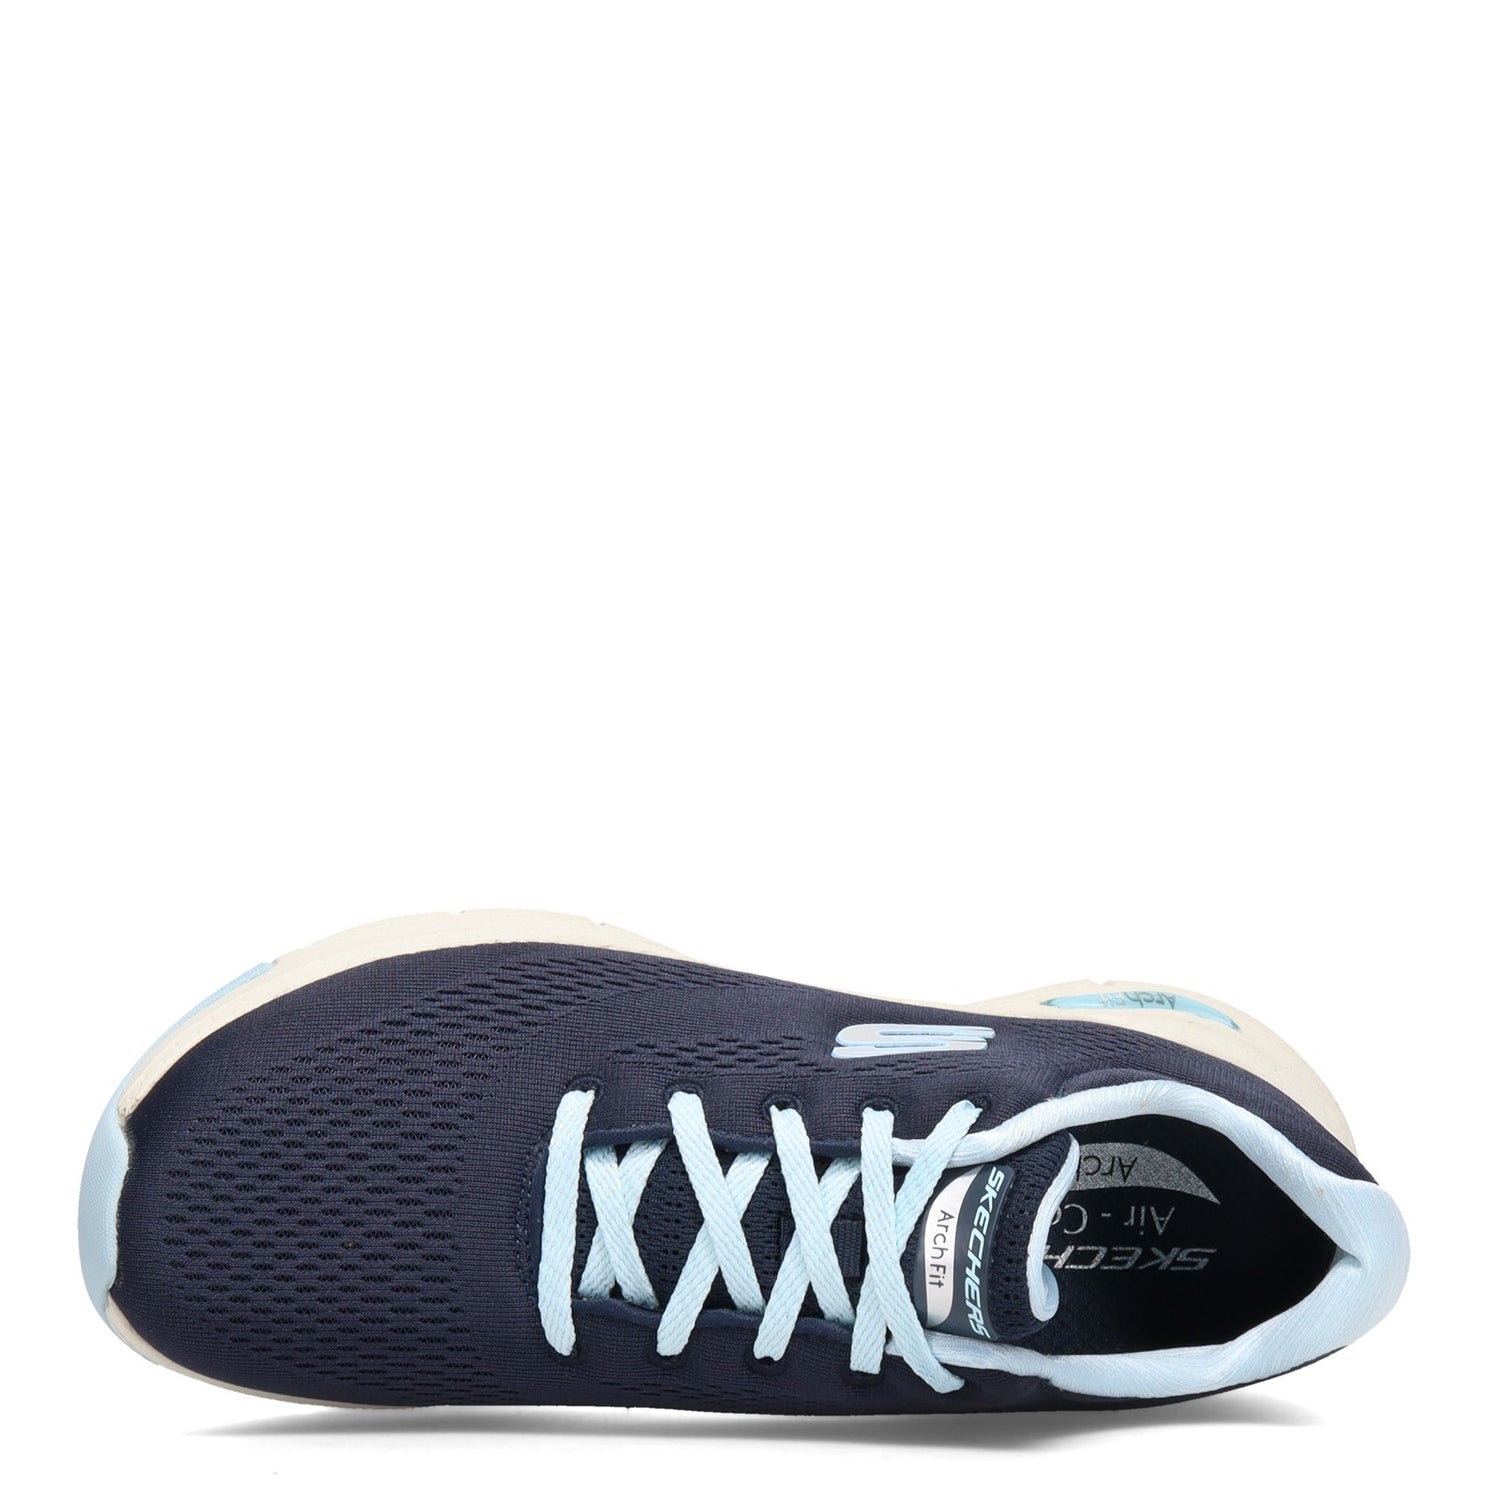 Peltz Shoes  Women's Skechers Arch Fit - Big Appeal Sneaker NAVY / BLUE 149057-NVLB